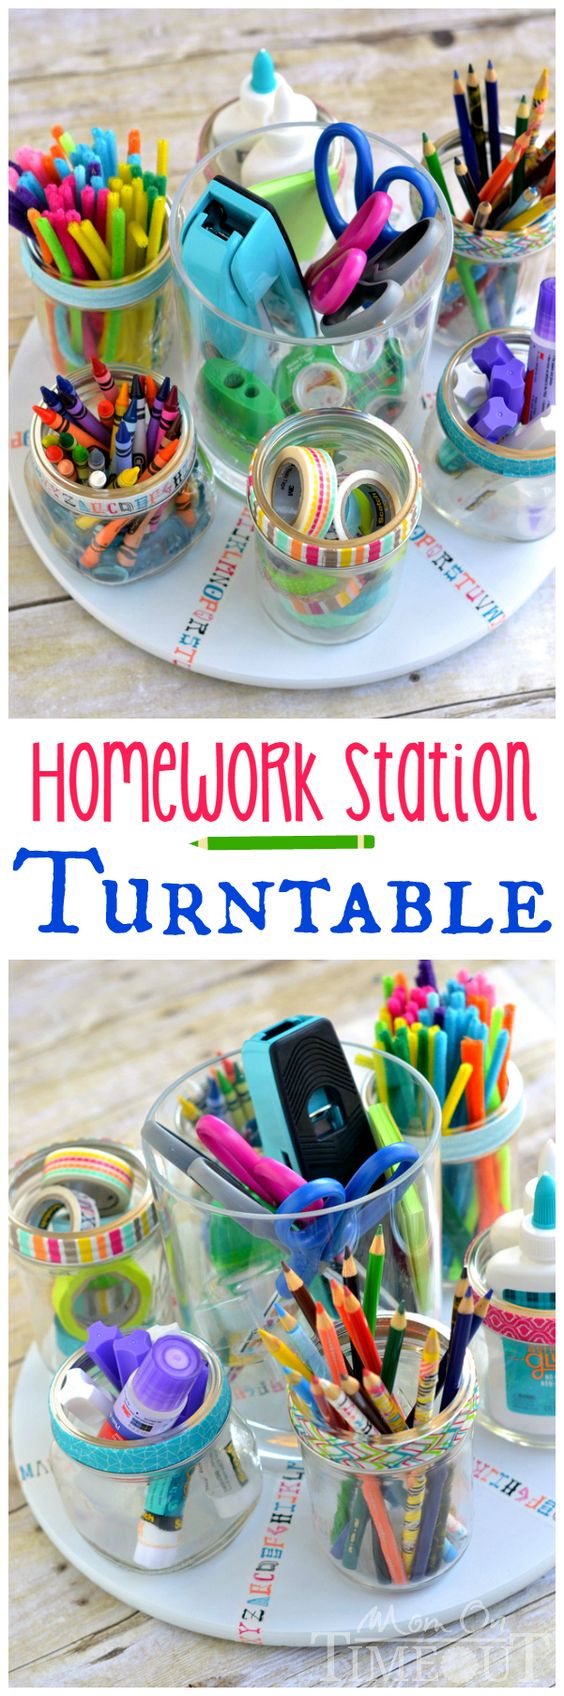 homework station turntaable